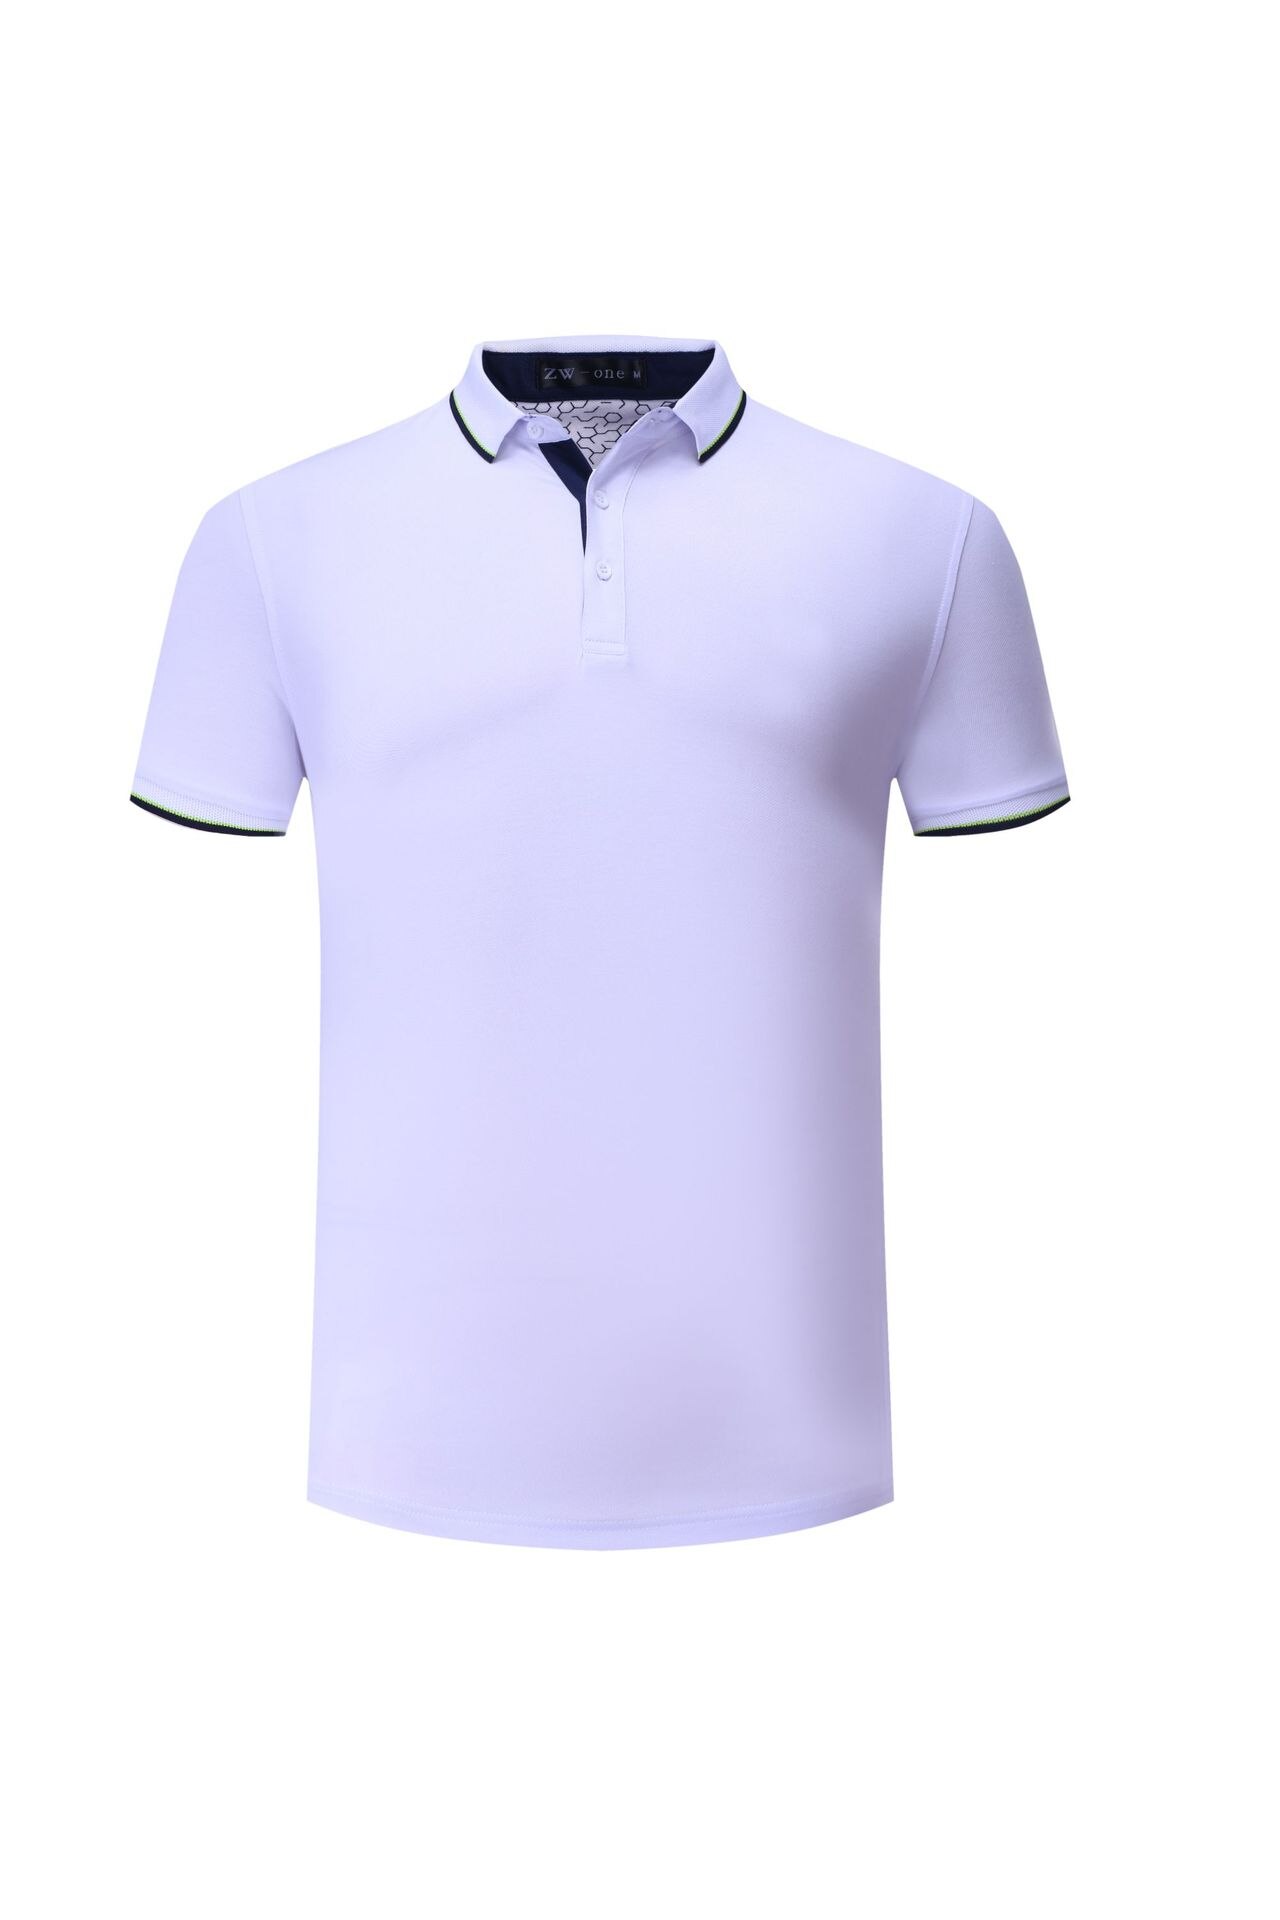 Hurtigtørrende golfskjorter til moderigtig / kvindelig shirt med kortærmet fleksibelt tøj til træning koszulka golfowa